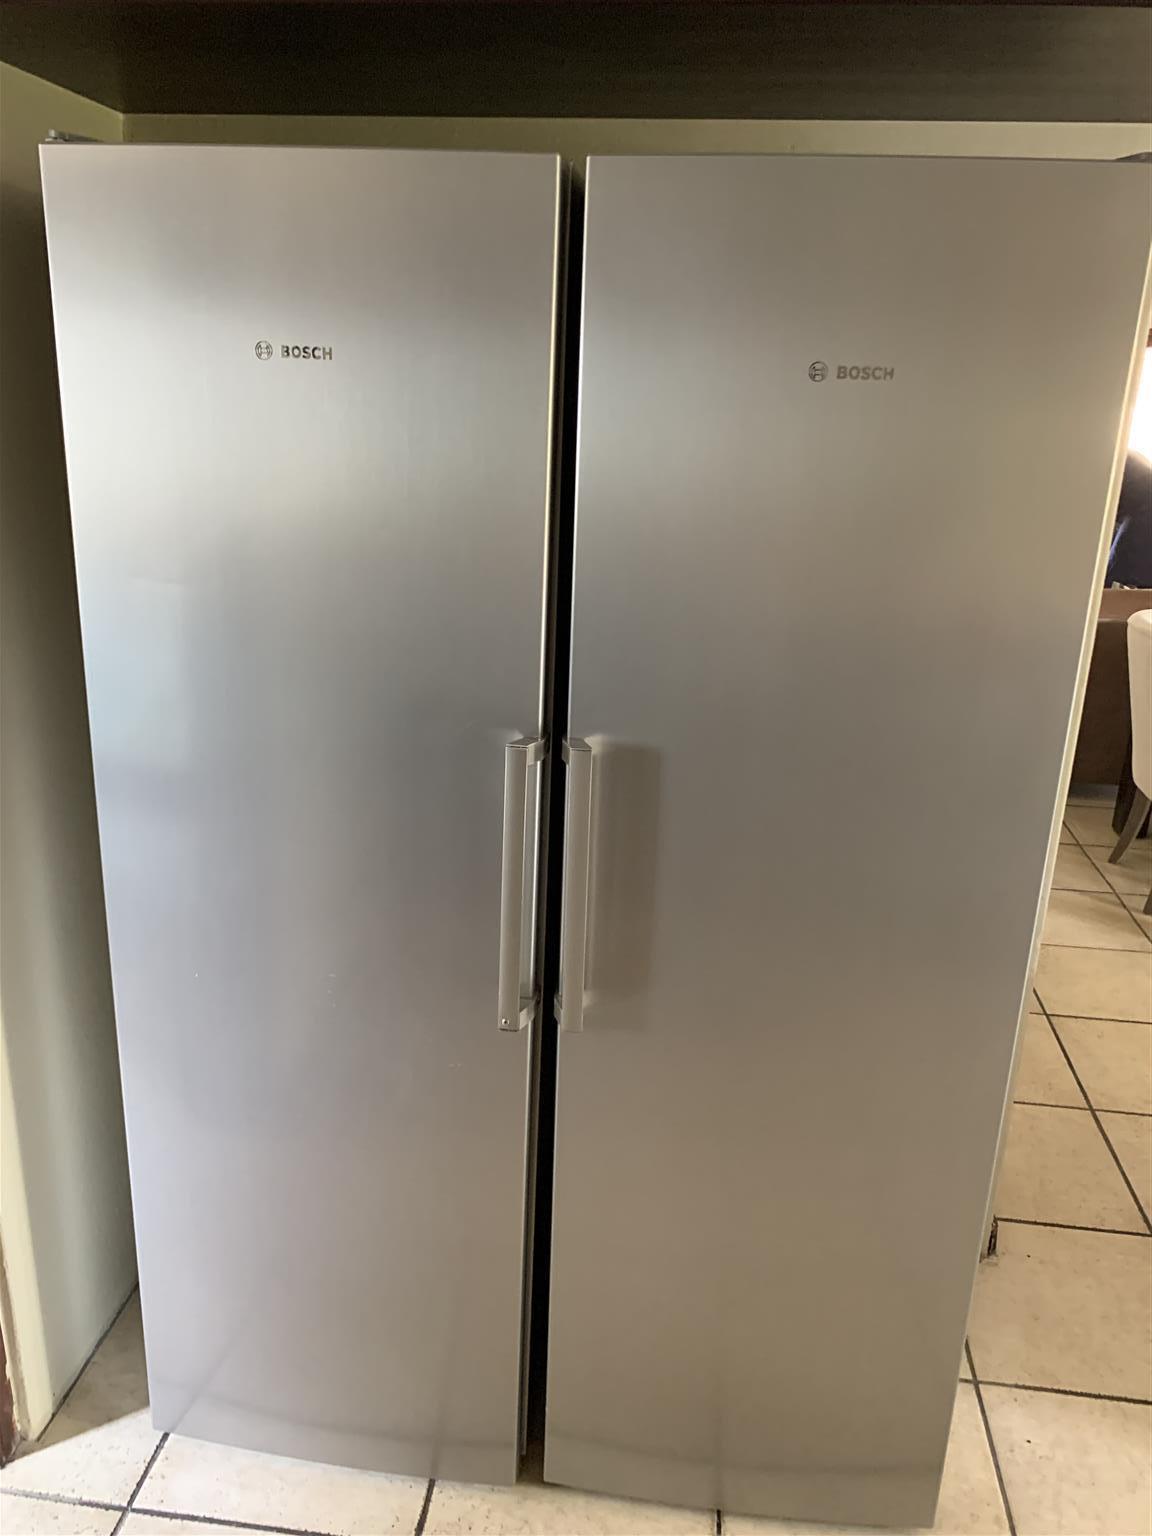 Bosch side by side Fridge Freezer units